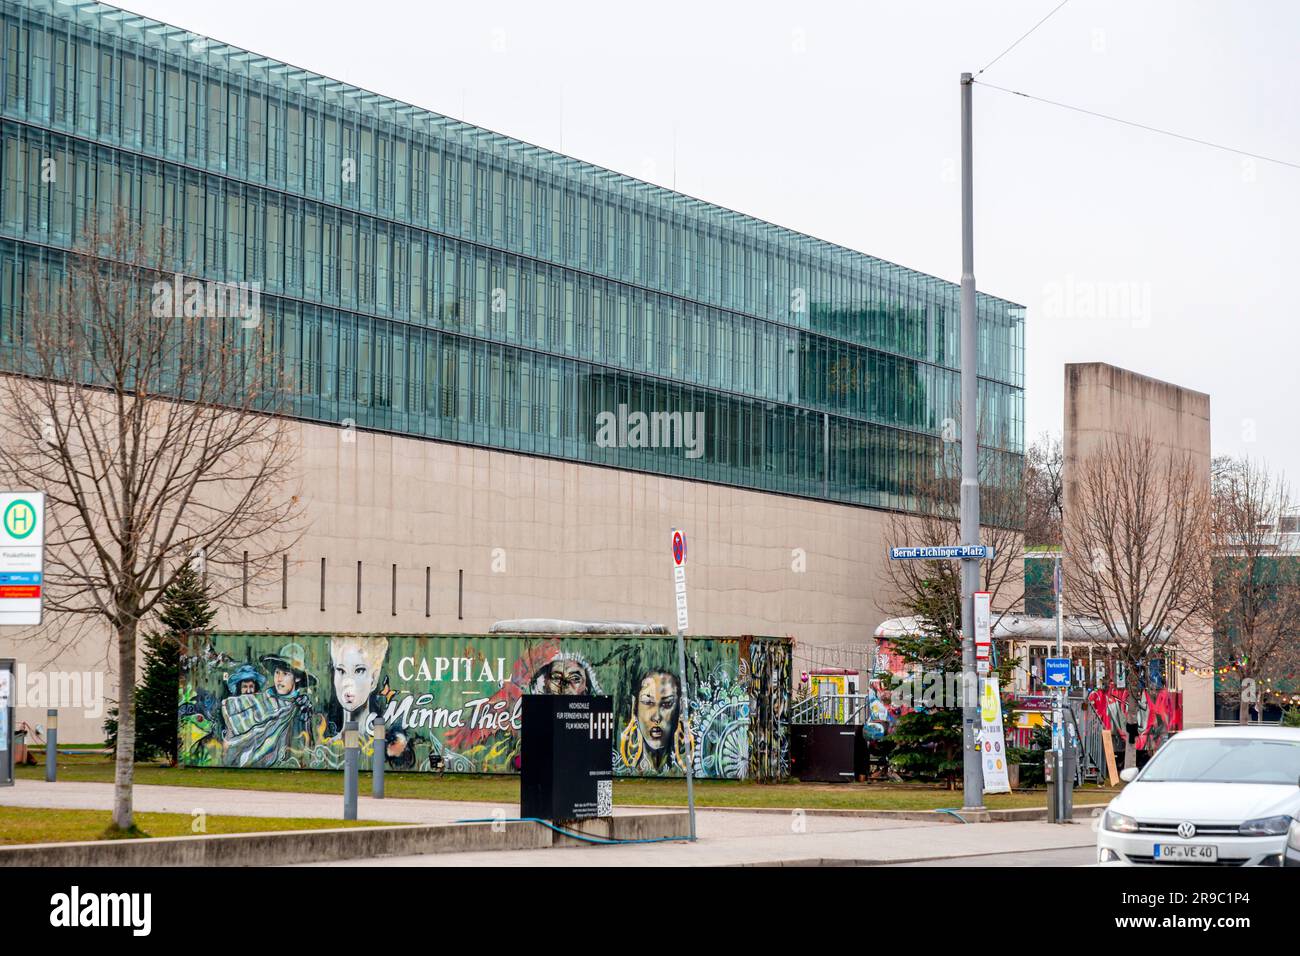 Munich, Allemagne - DEC 23, 2021: Façade de la Nouvelle Pinakothek, le musée d'art moderne de Munich, Bavière, Allemagne. Banque D'Images